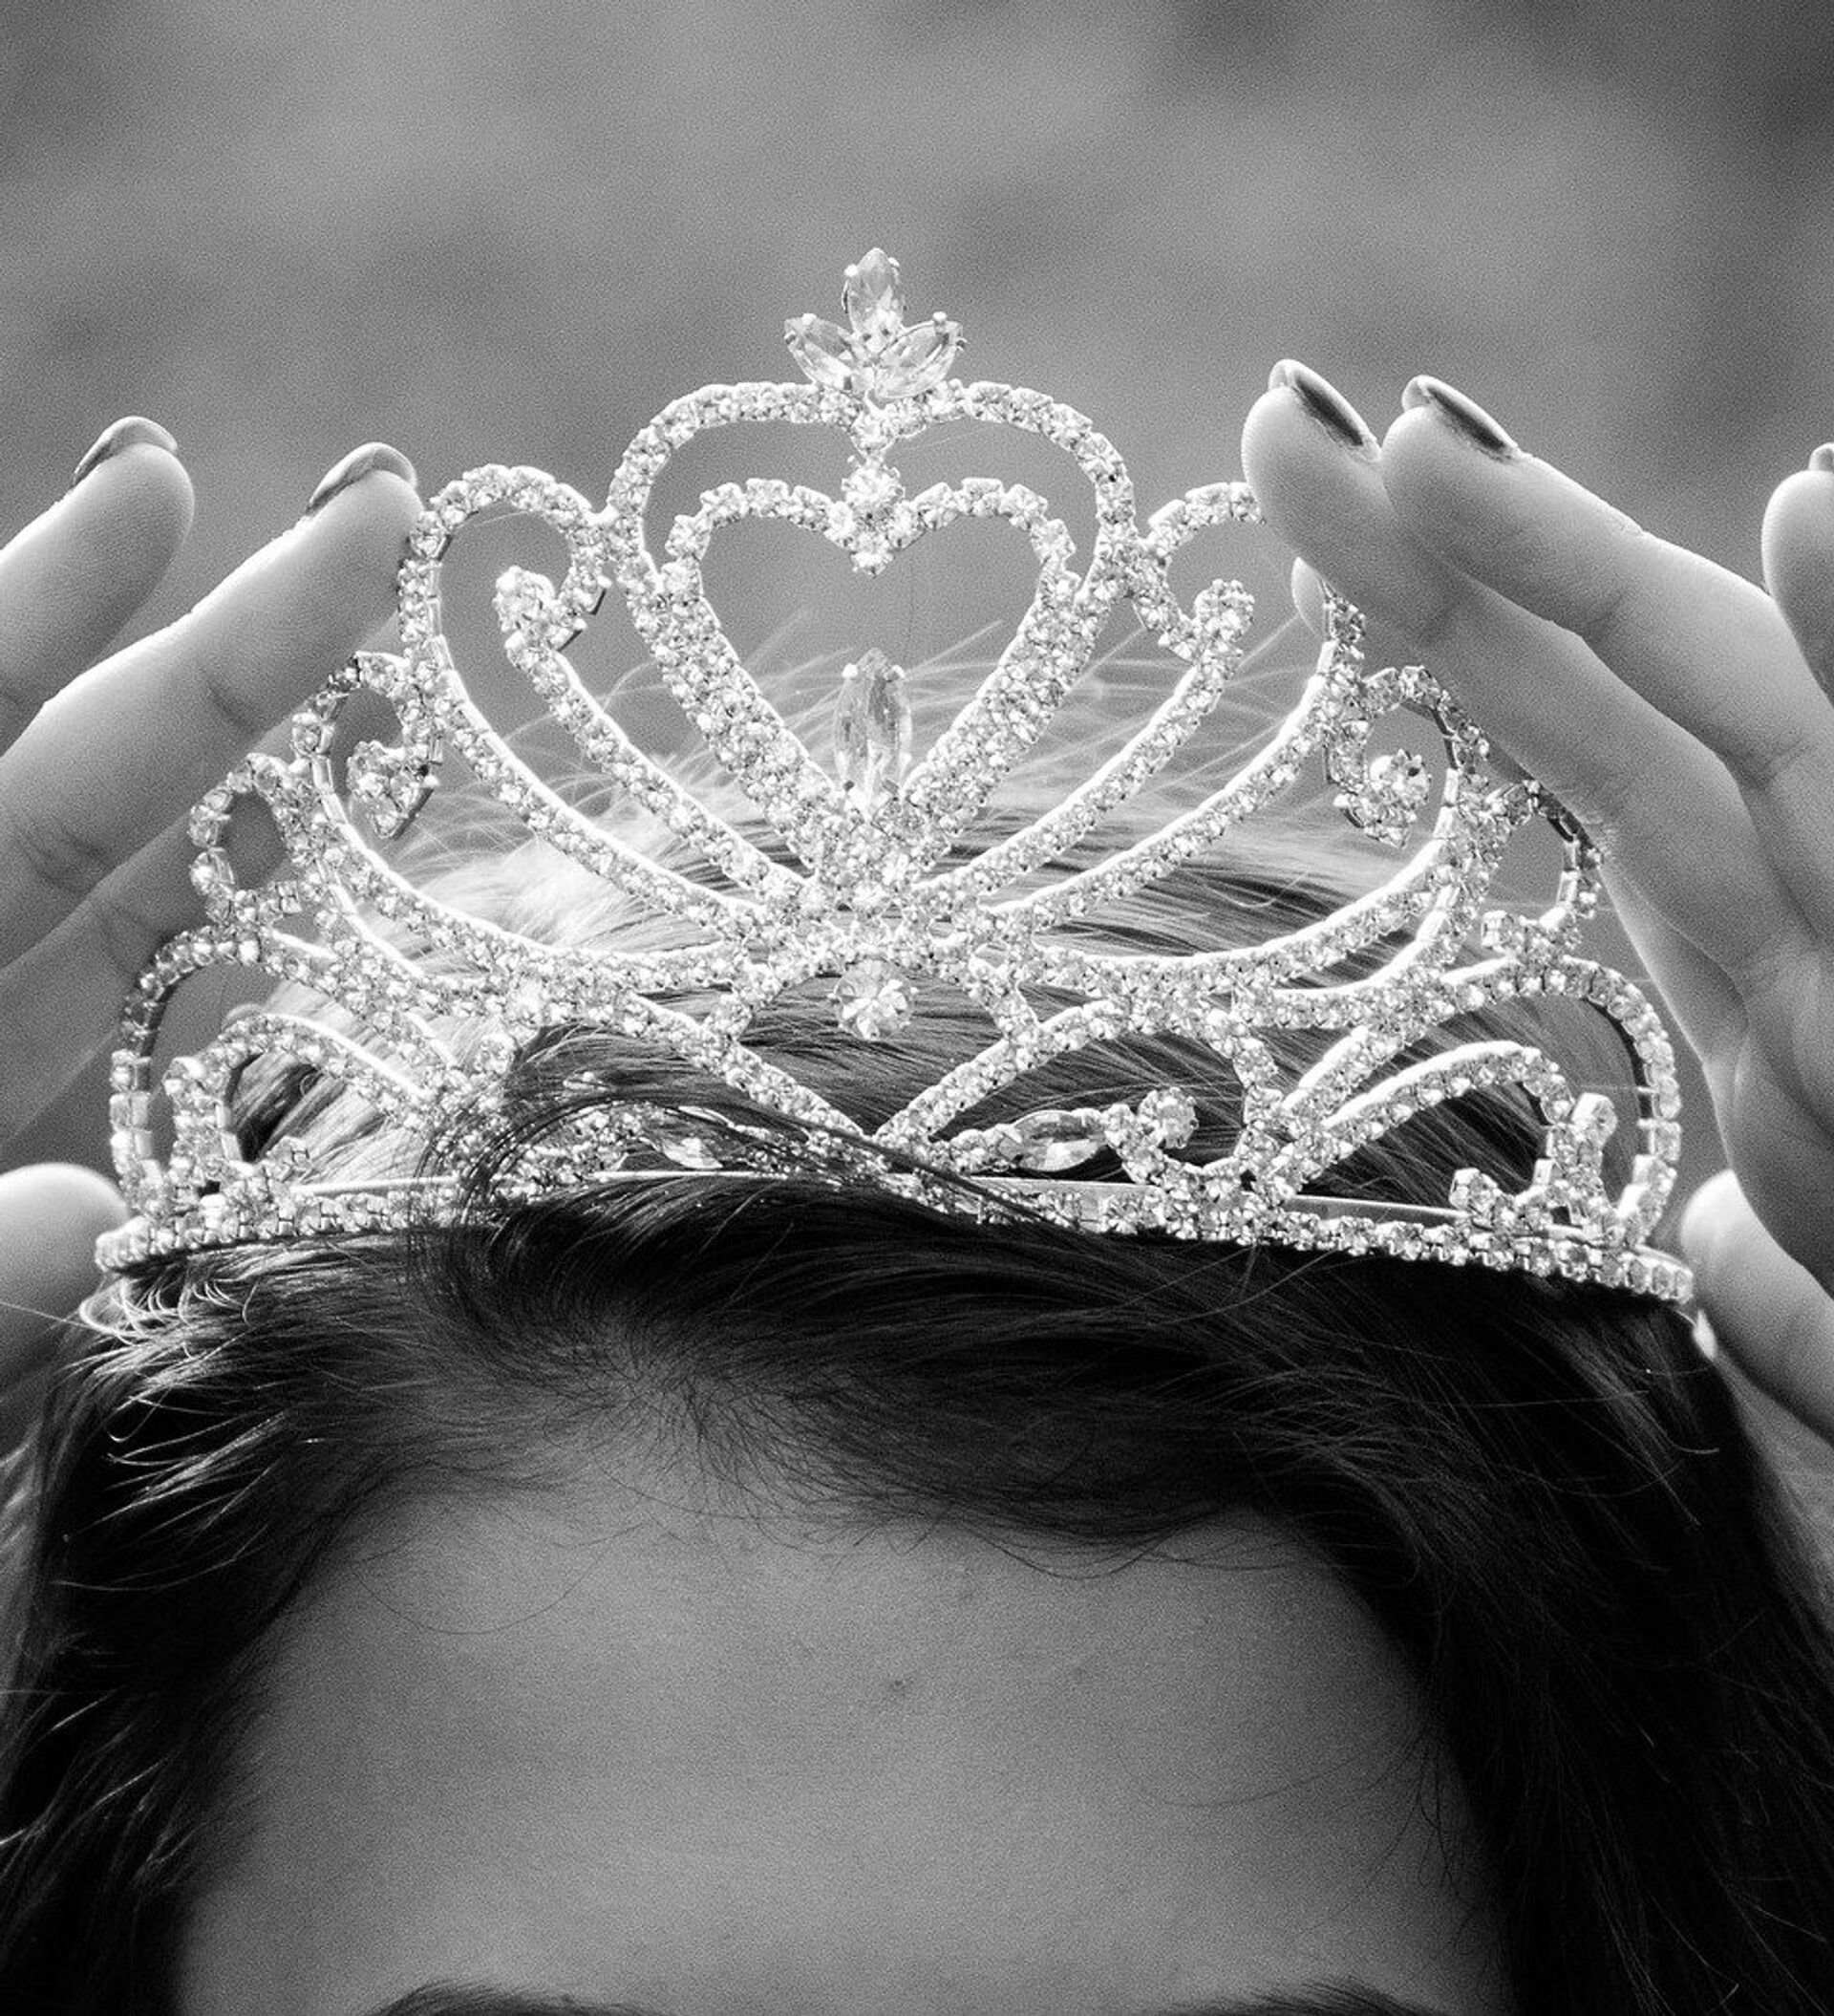 Корона принцесса. Корона королевы красоты. Надела корону. Надевают корону на голову. Песня надену корону на королеву